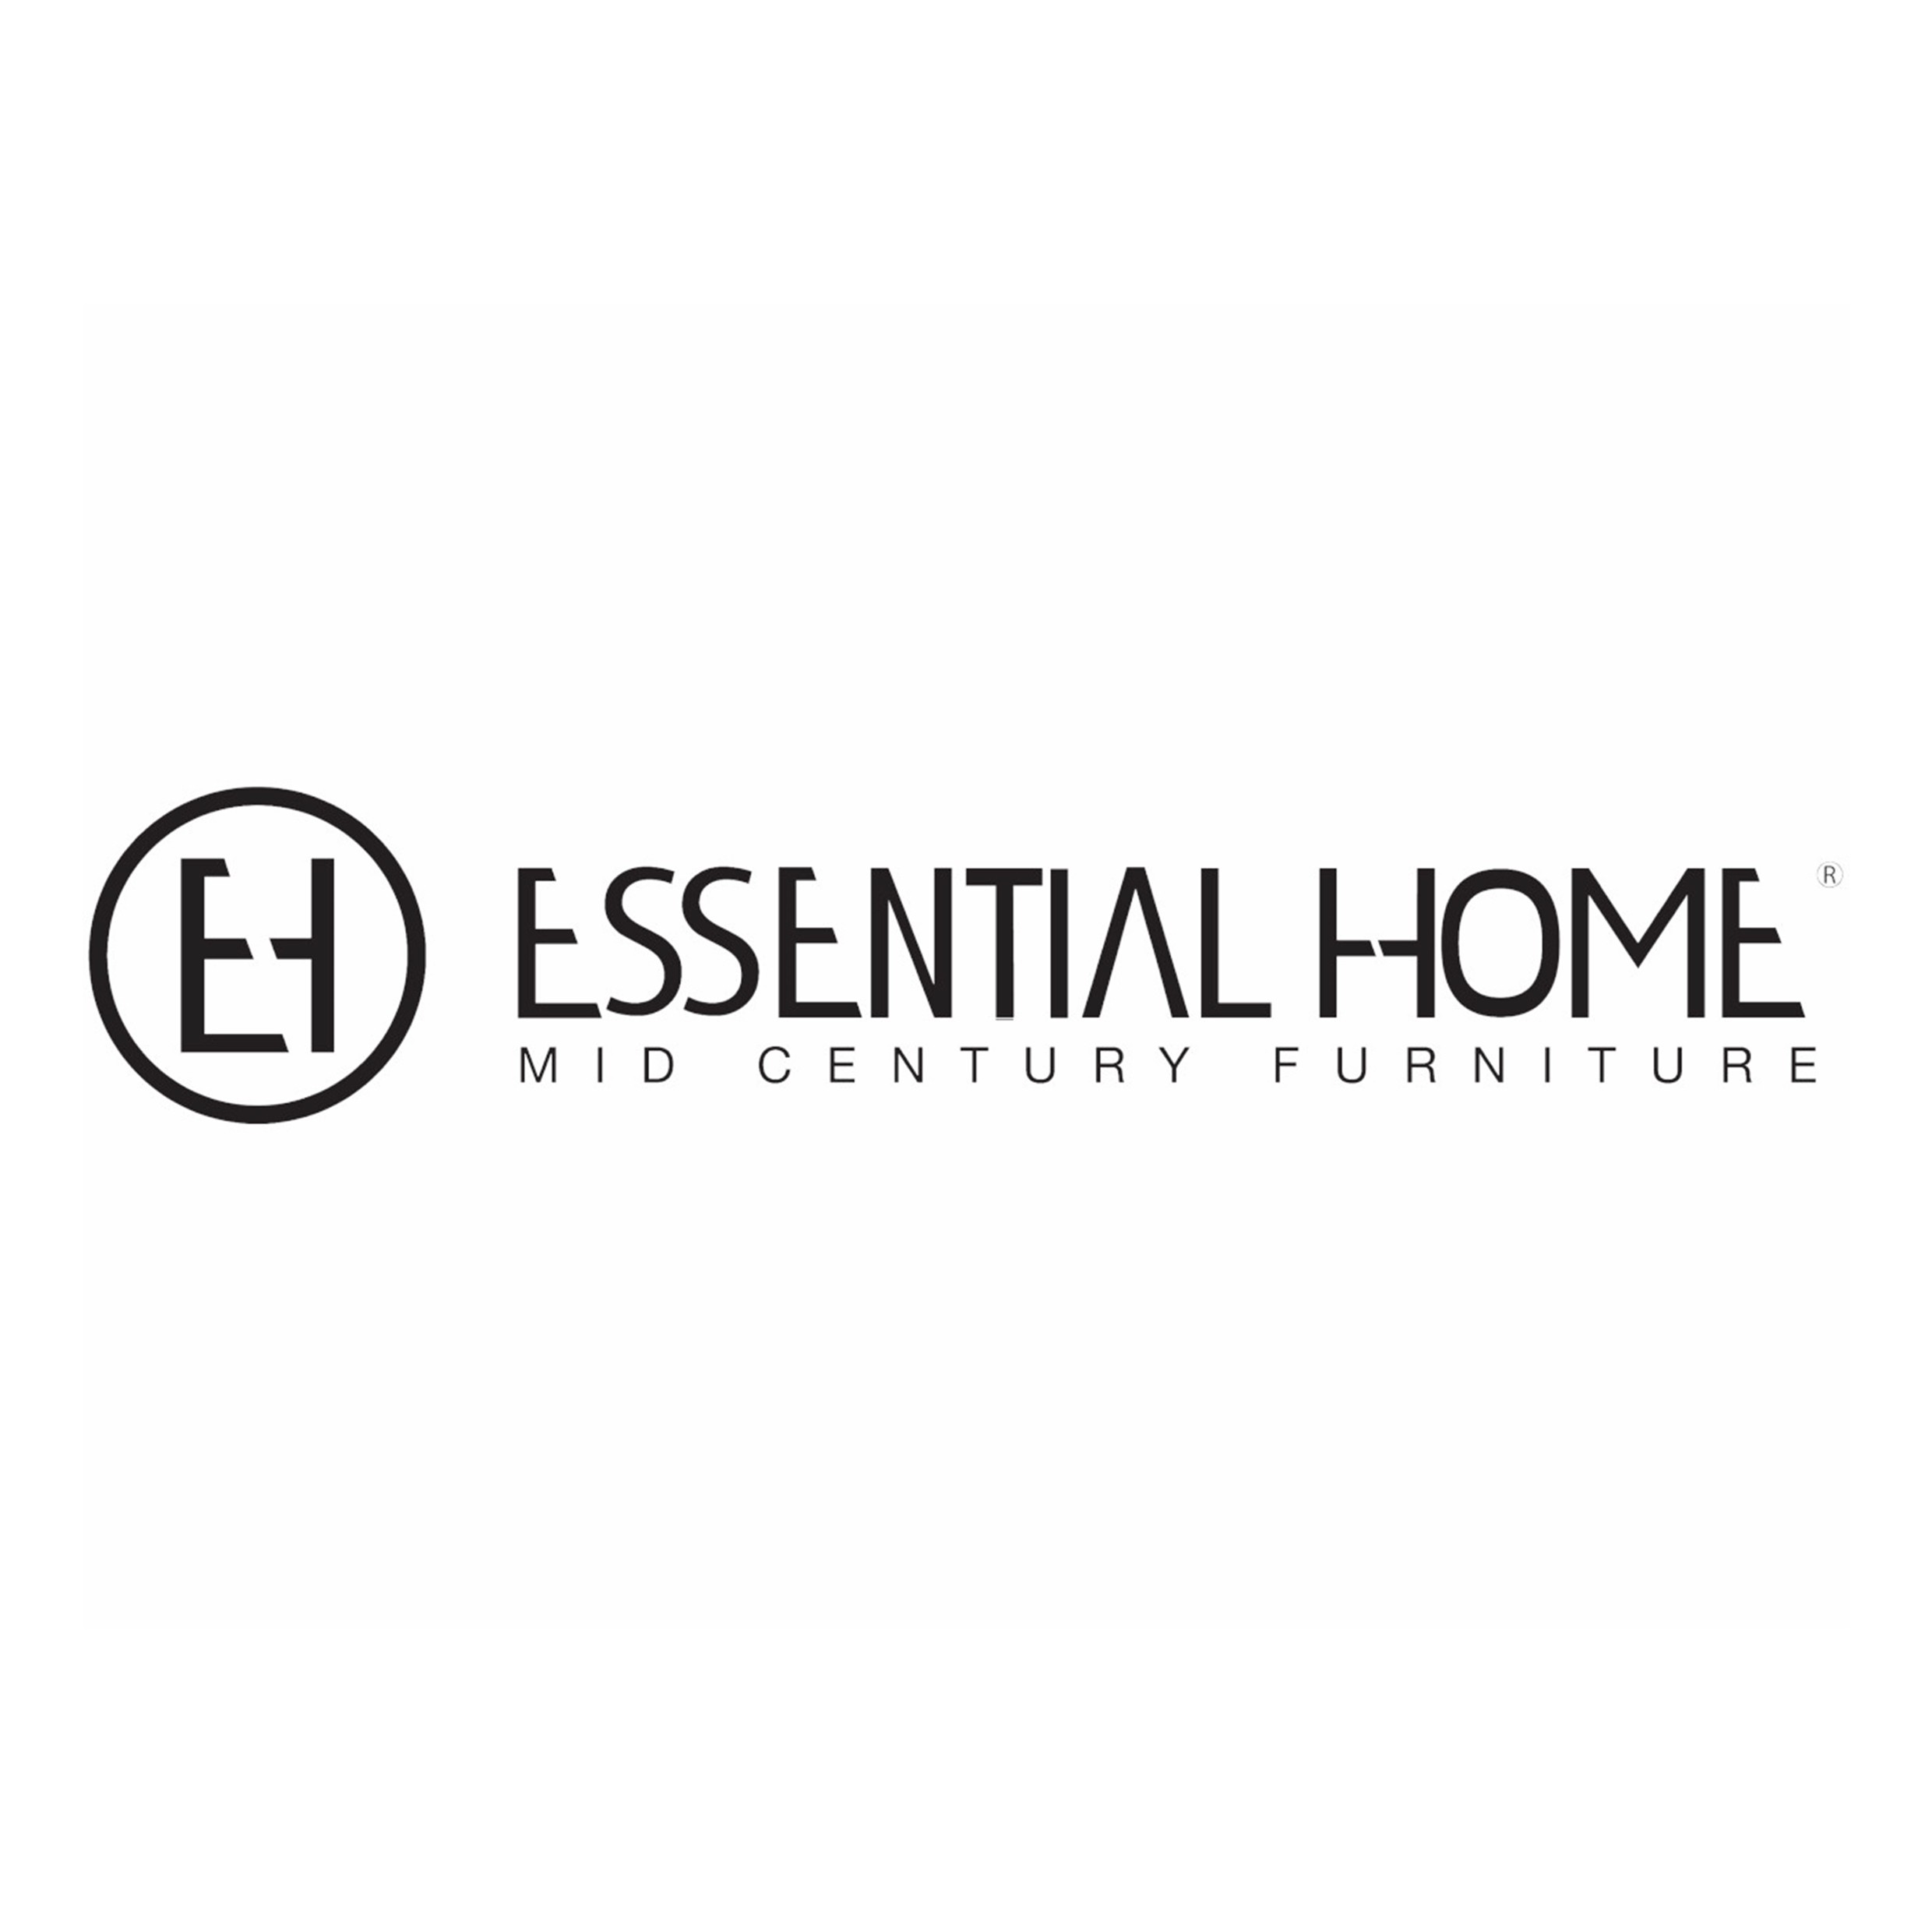 Essential Home